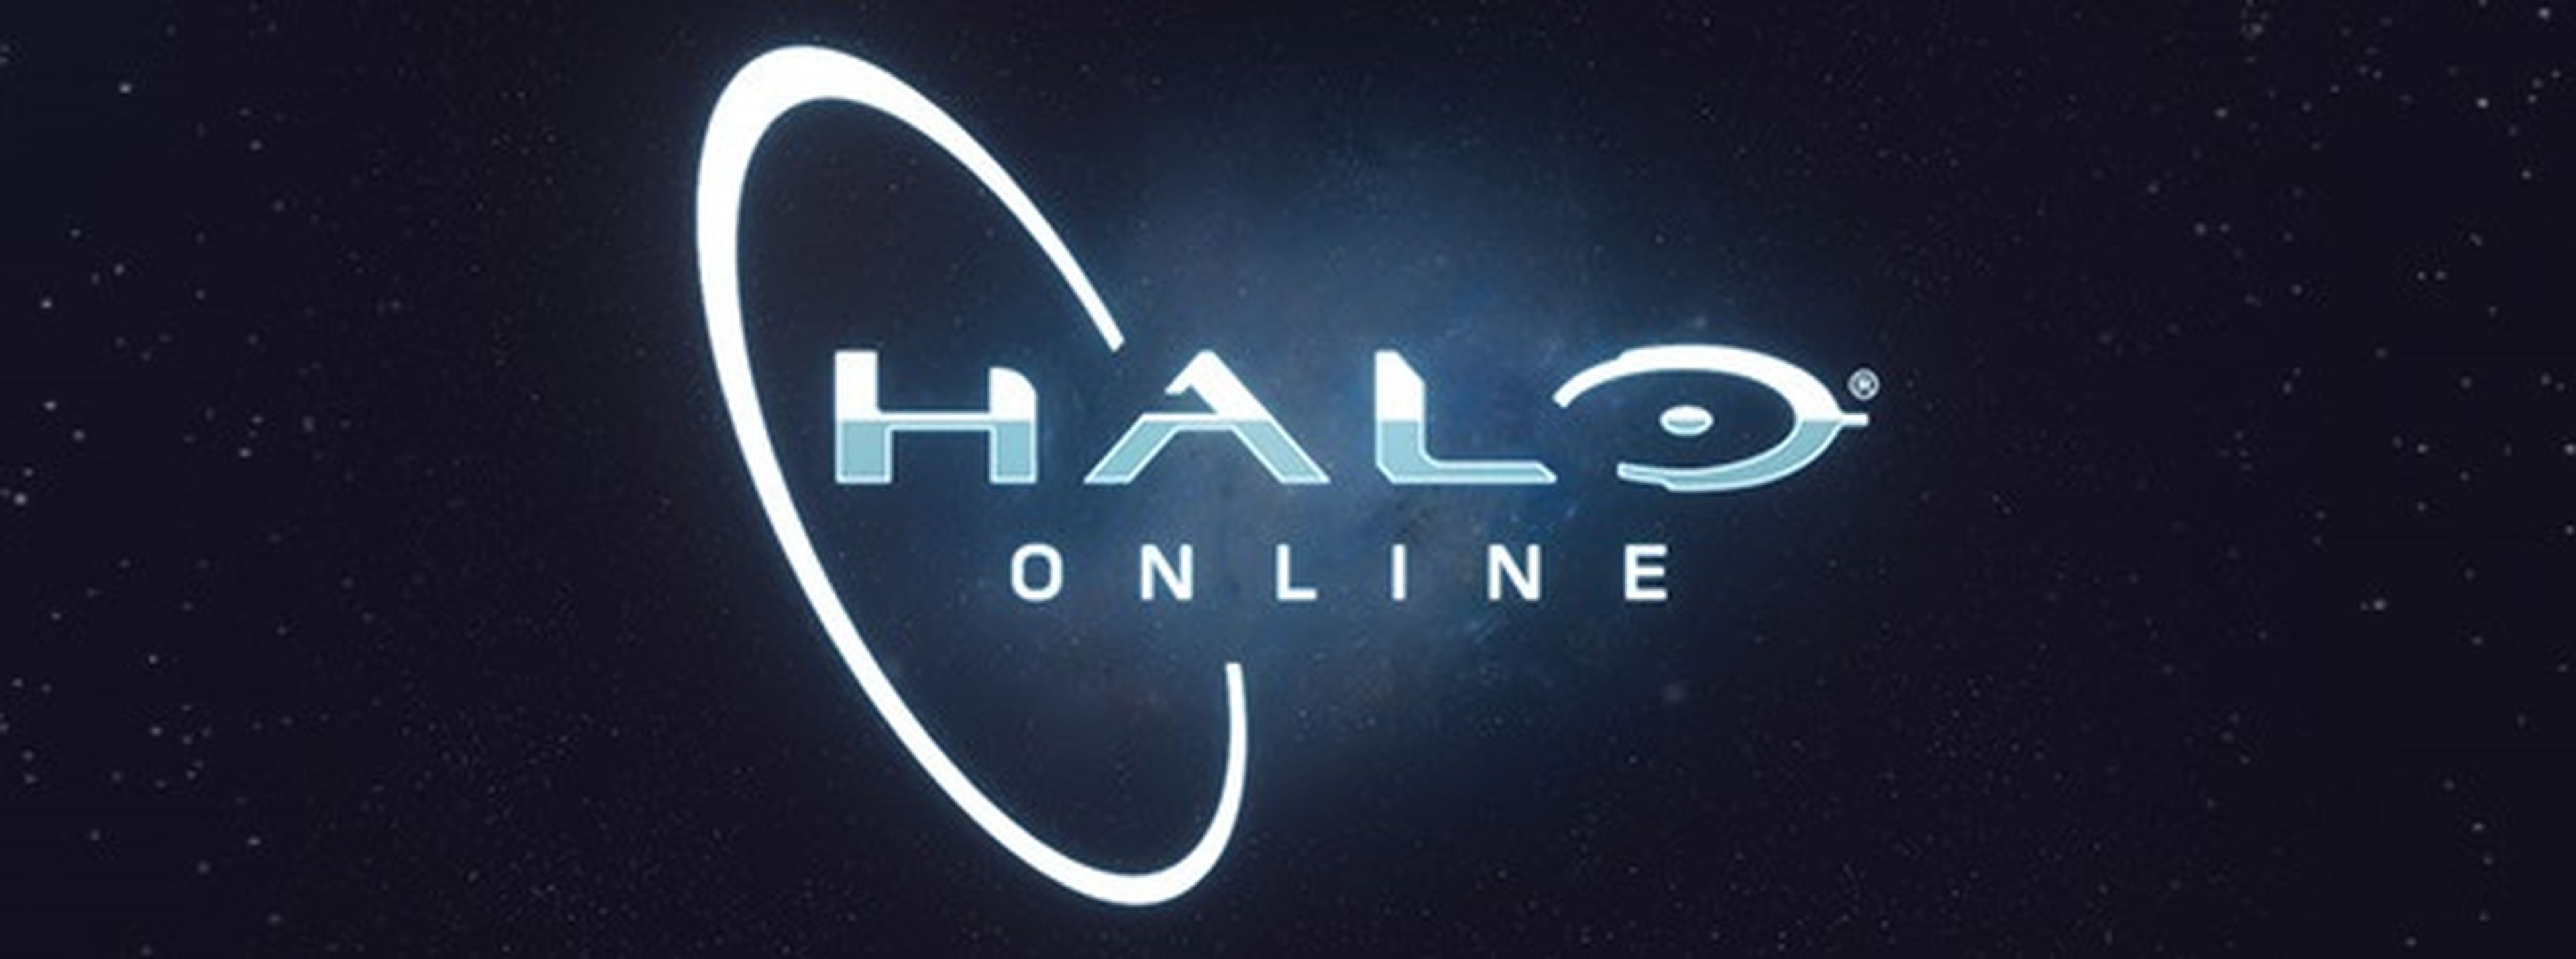 Halo Online anunciado para PC